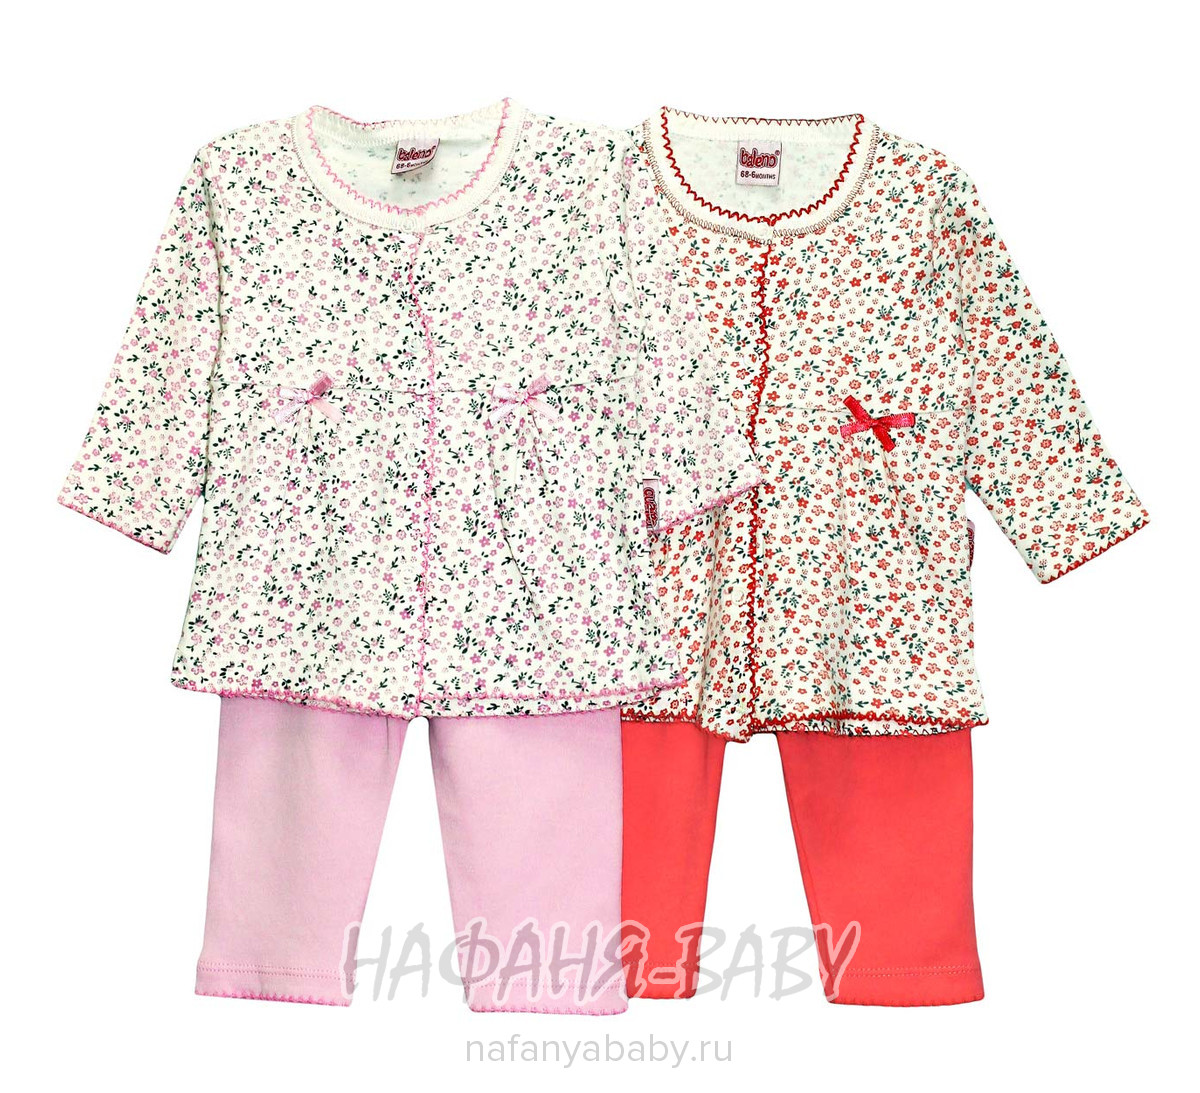 Костюм для девочки (кофта+брюки) BALENO арт: 3346, 0-12 мес, цвет кремовый с розовым, оптом Турция